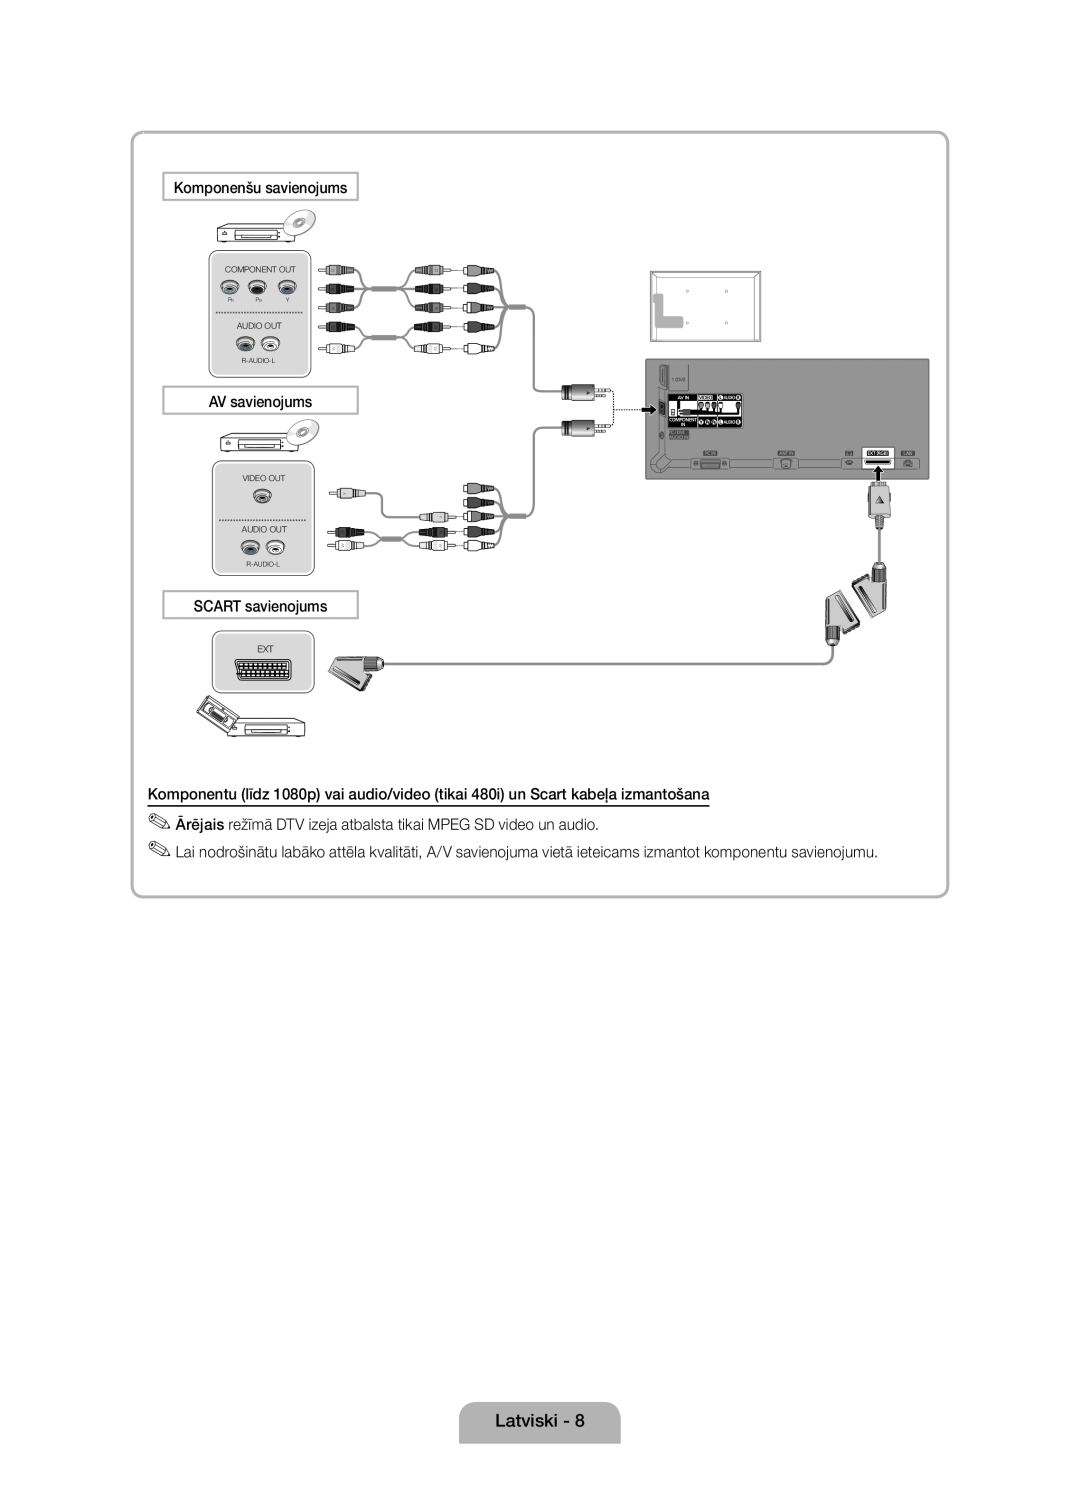 Samsung UE40D5000PWXXH, UE32D5000PWXZG Komponenšu savienojums, AV savienojums, SCART savienojums, Component Out, Audio Out 